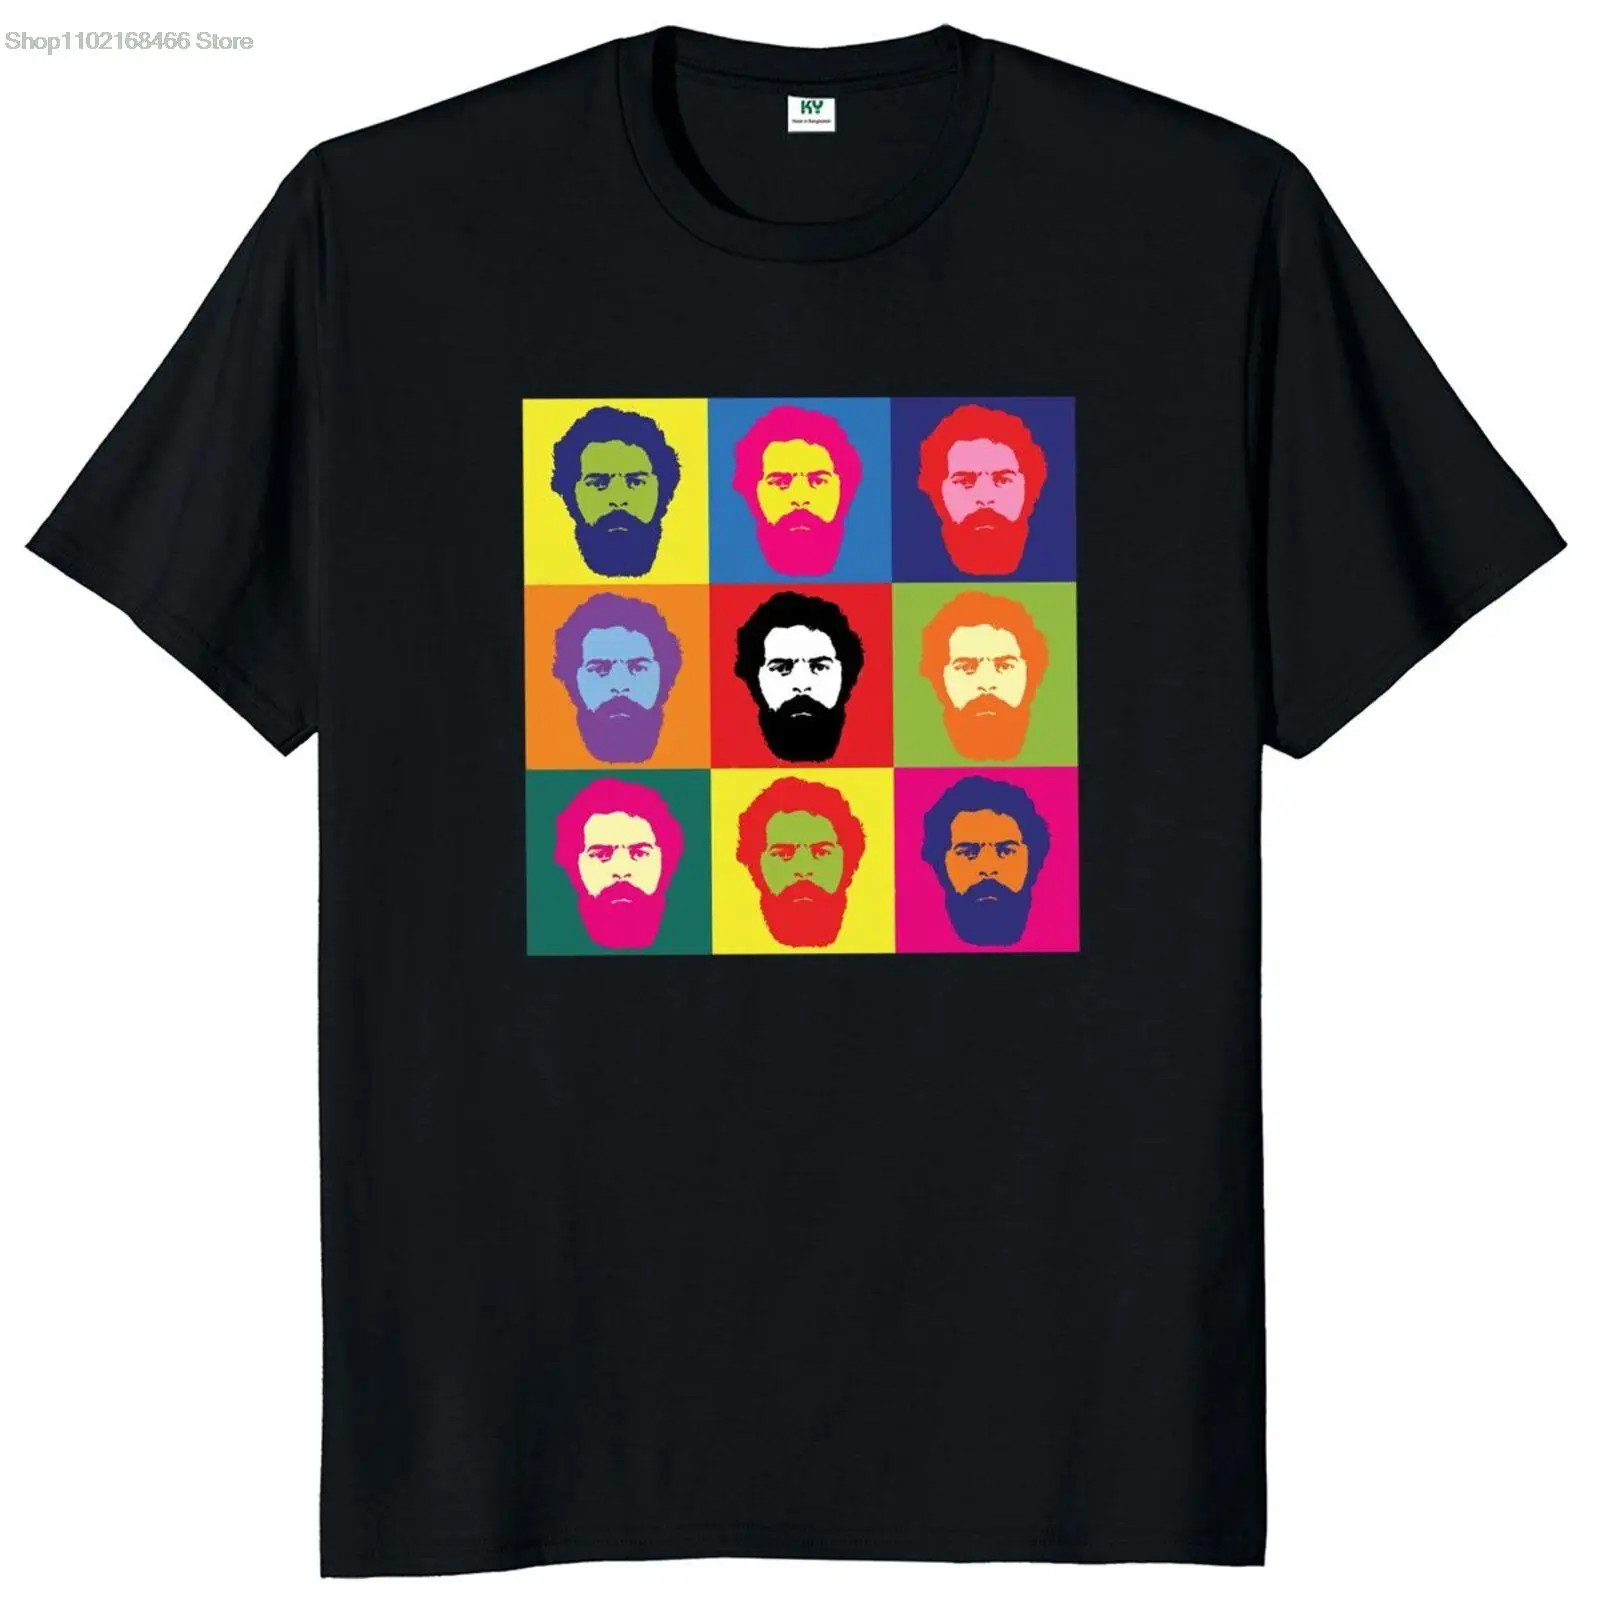 Free Lula 2022 President Of Brazil T Shirt Retro Pop Art Classic T-Shirt Lula 2022 Brazil Presidential Election Unisex Tshirts